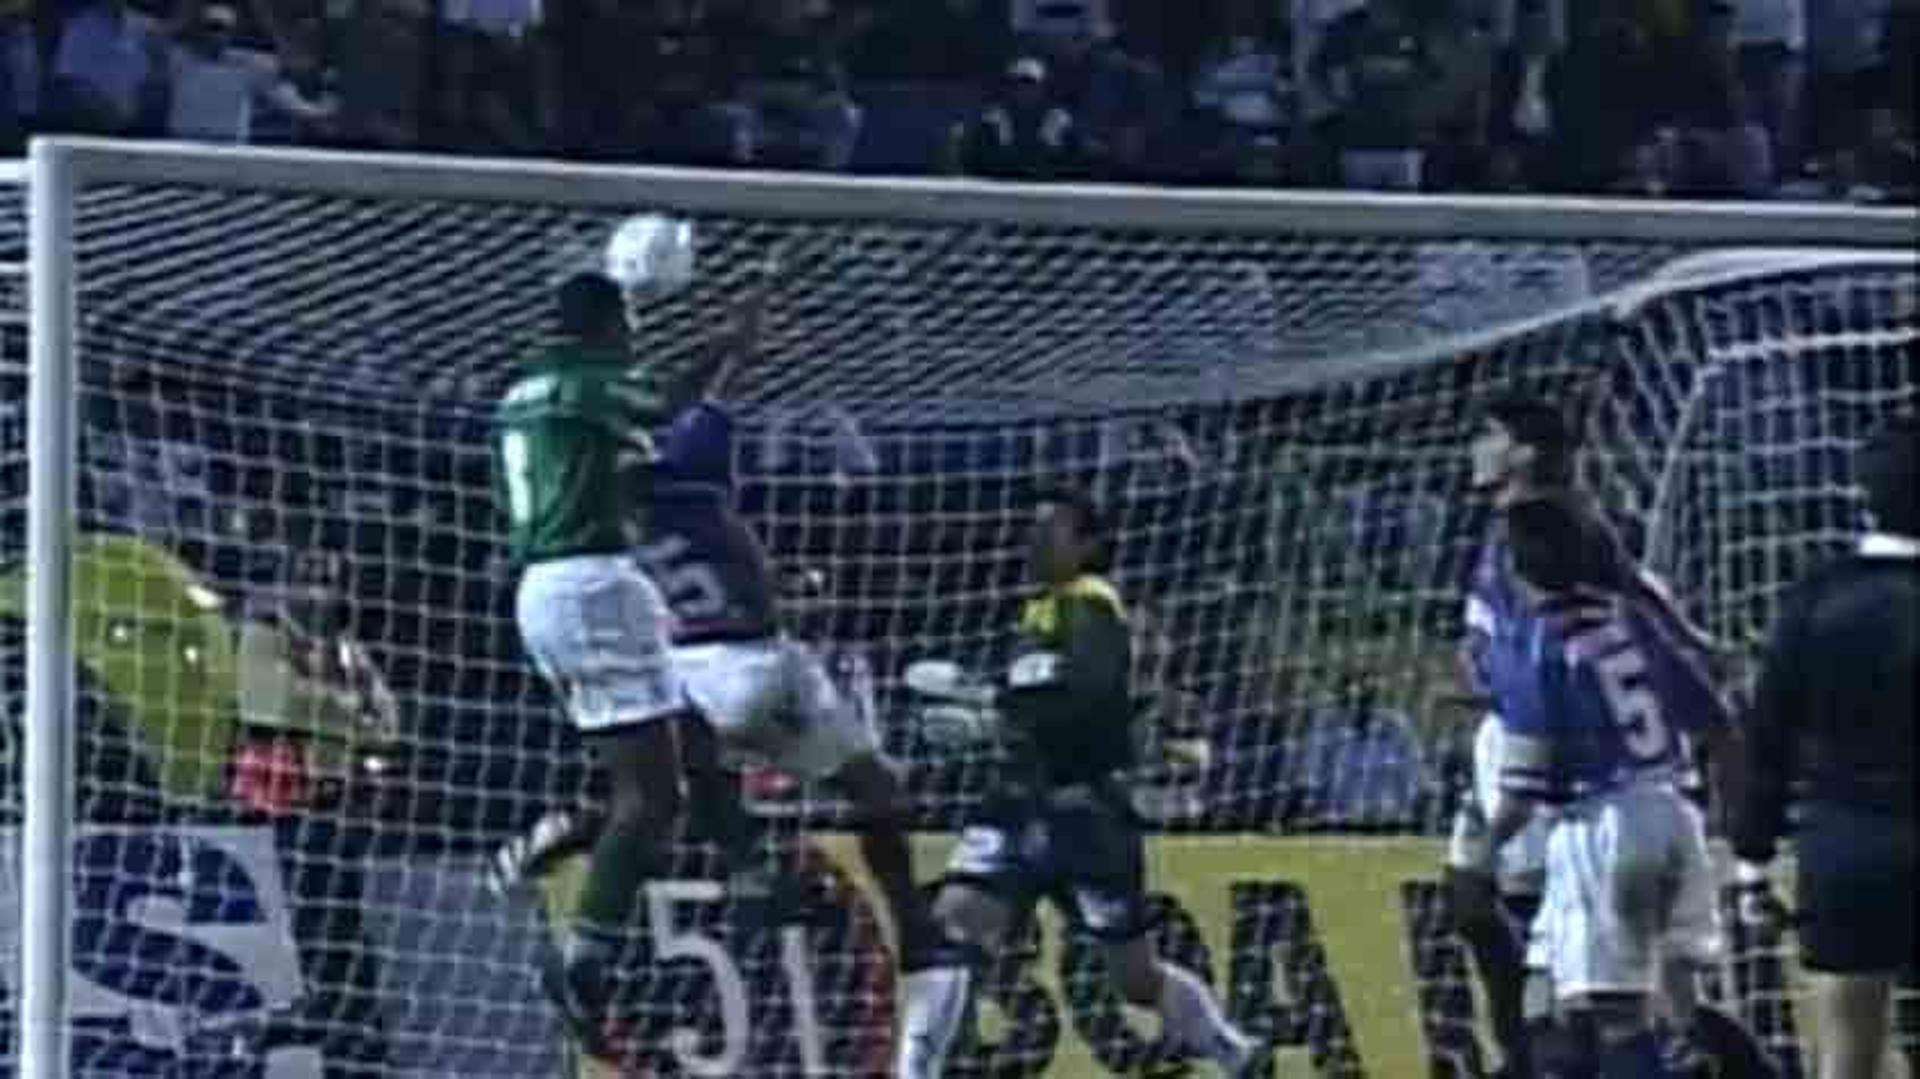 07/04/1999 - Palmeiras 2 x 1 Cerro Porteño (PAR) - Palestra Itália - São Paulo